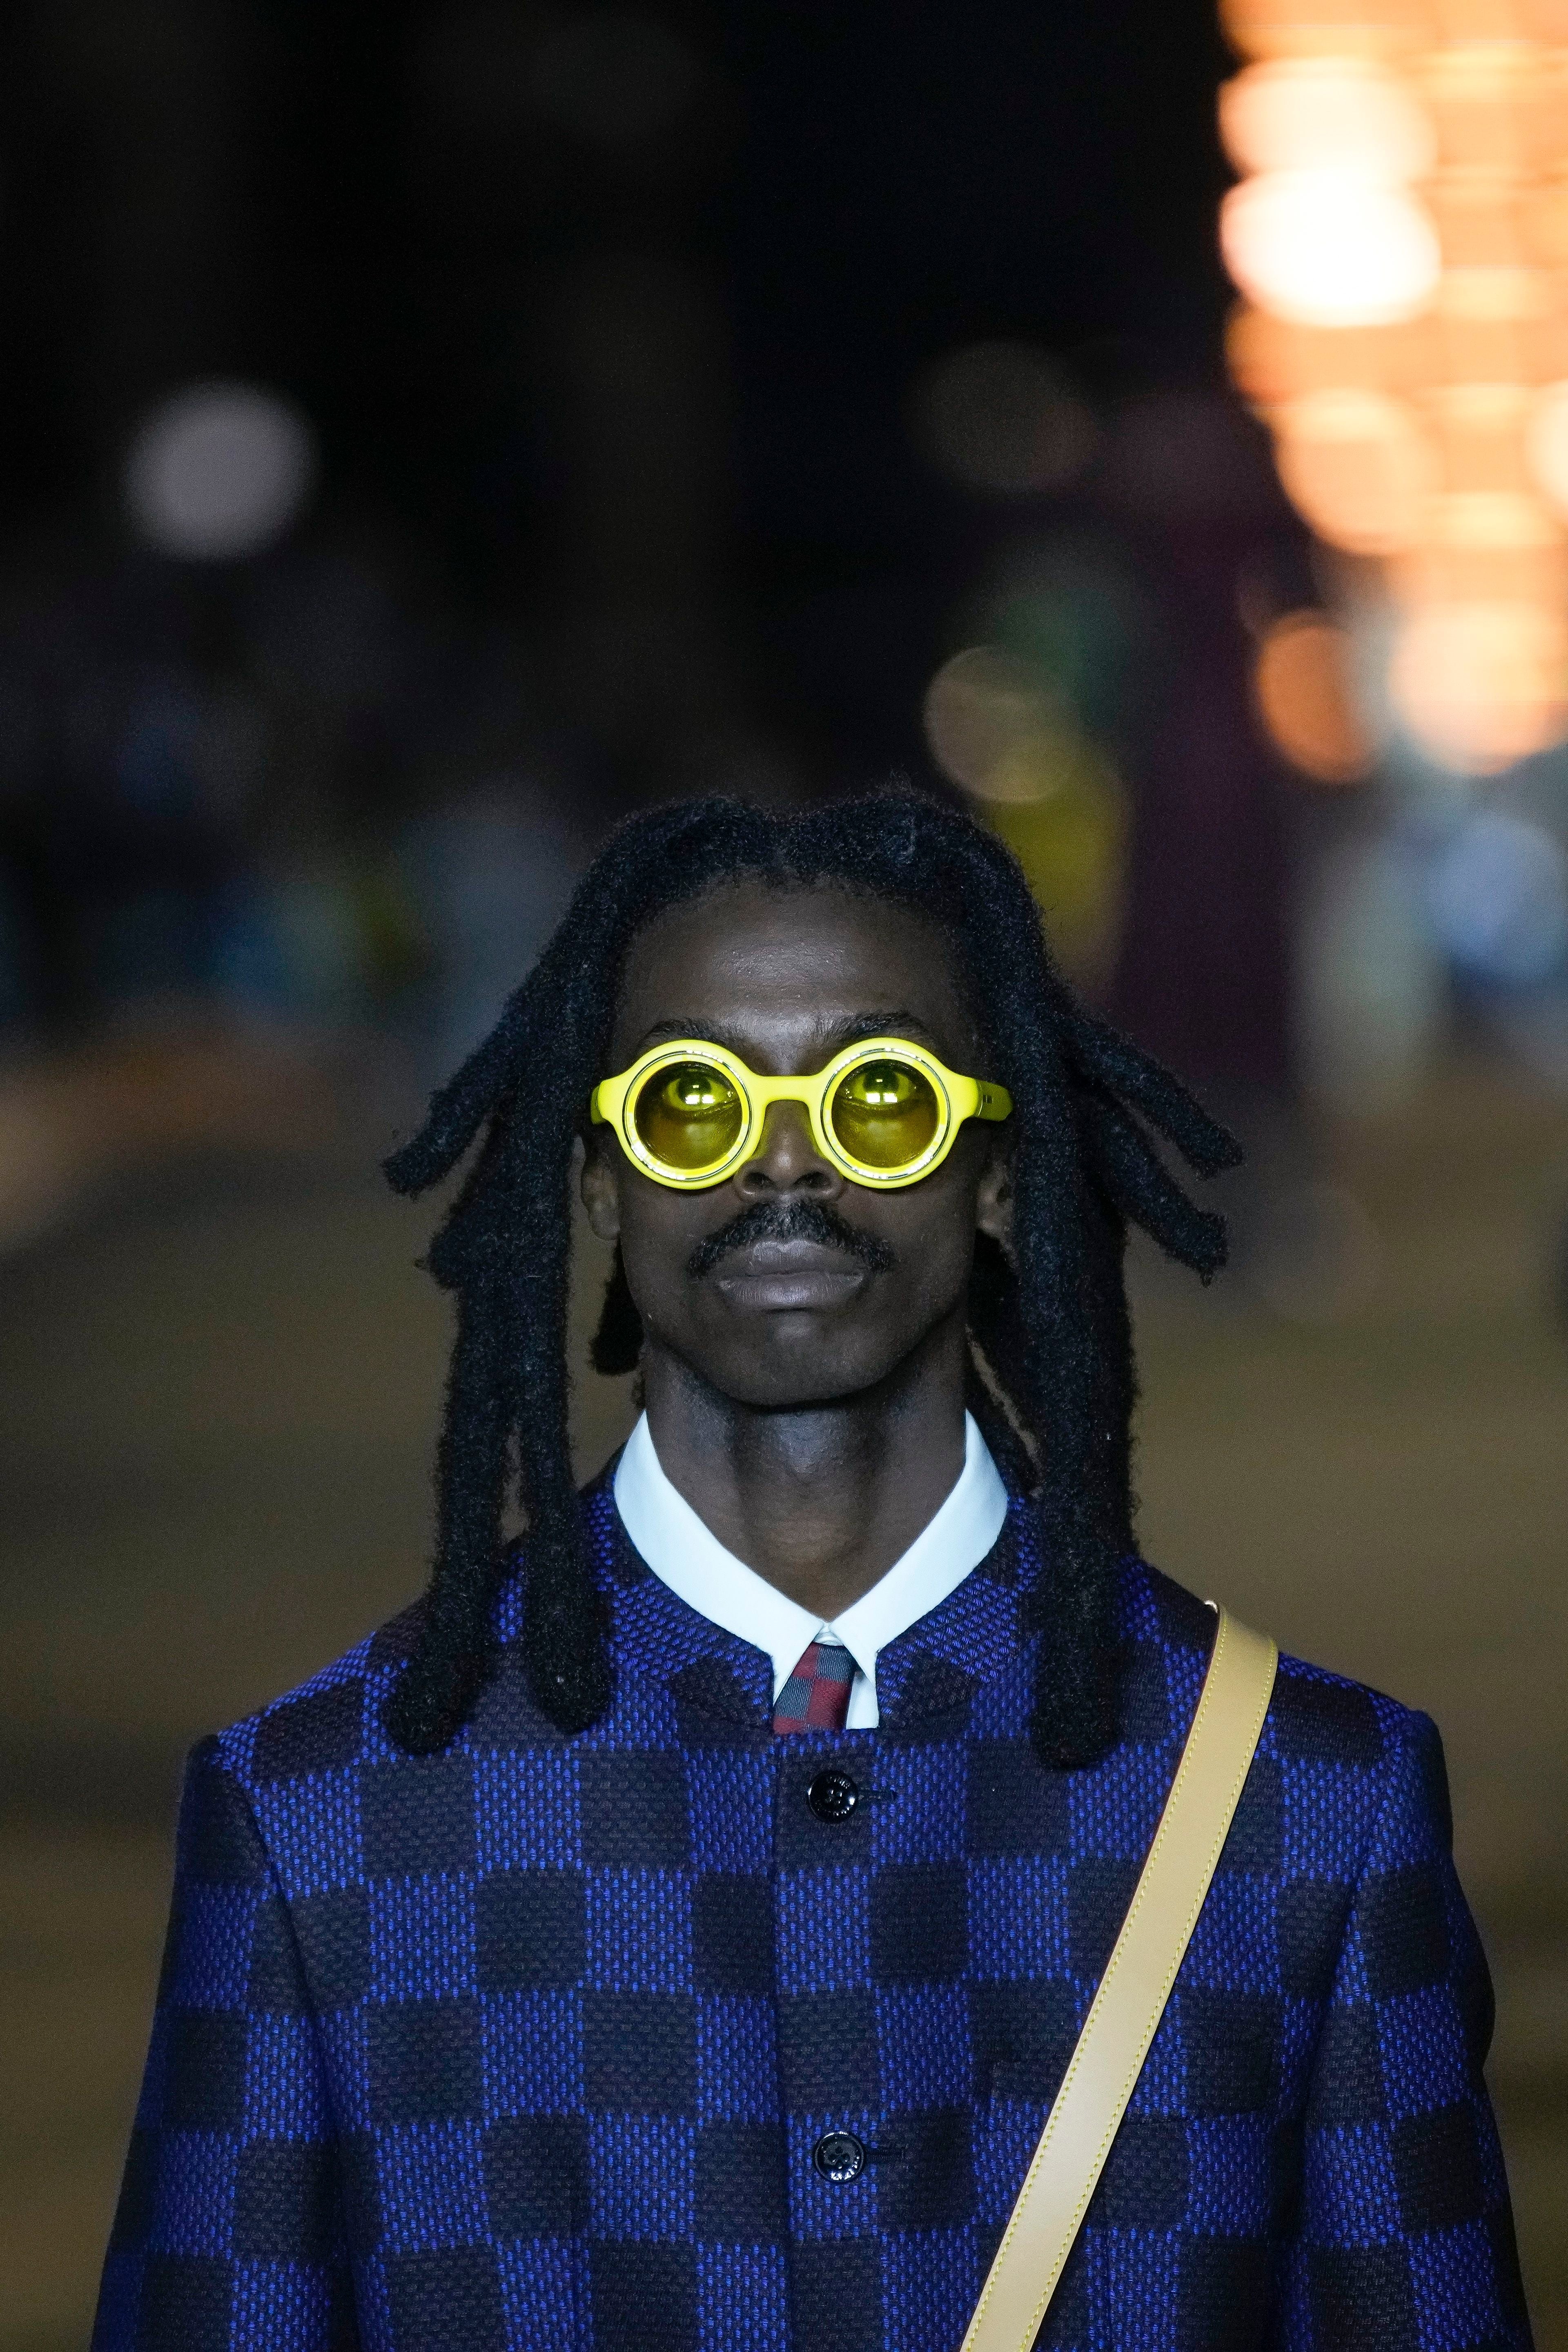 Louis Vuitton Sunglasses Damier Pattern mens sunglasses